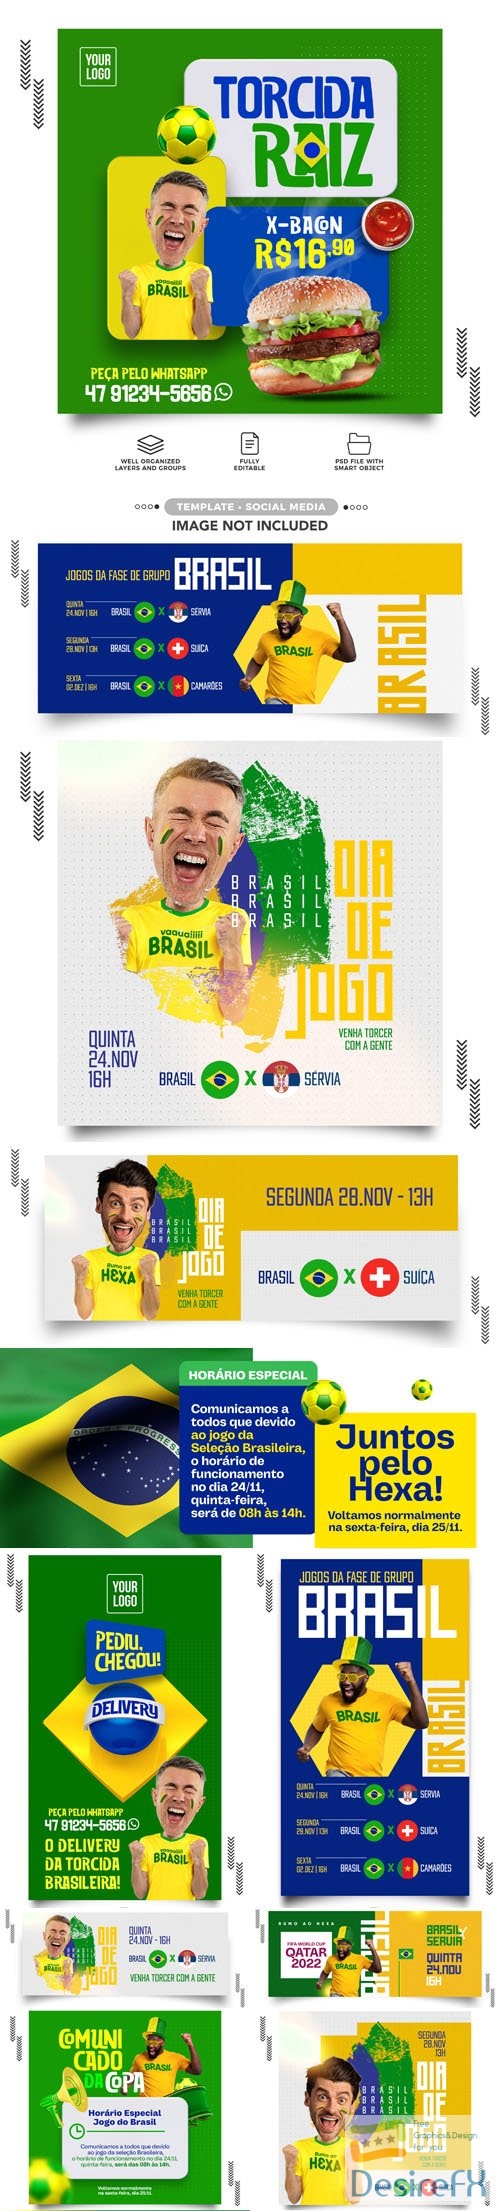 World Cup - Qatar 2022 - The Brazil Team - 20+ Social Media PSD Templates